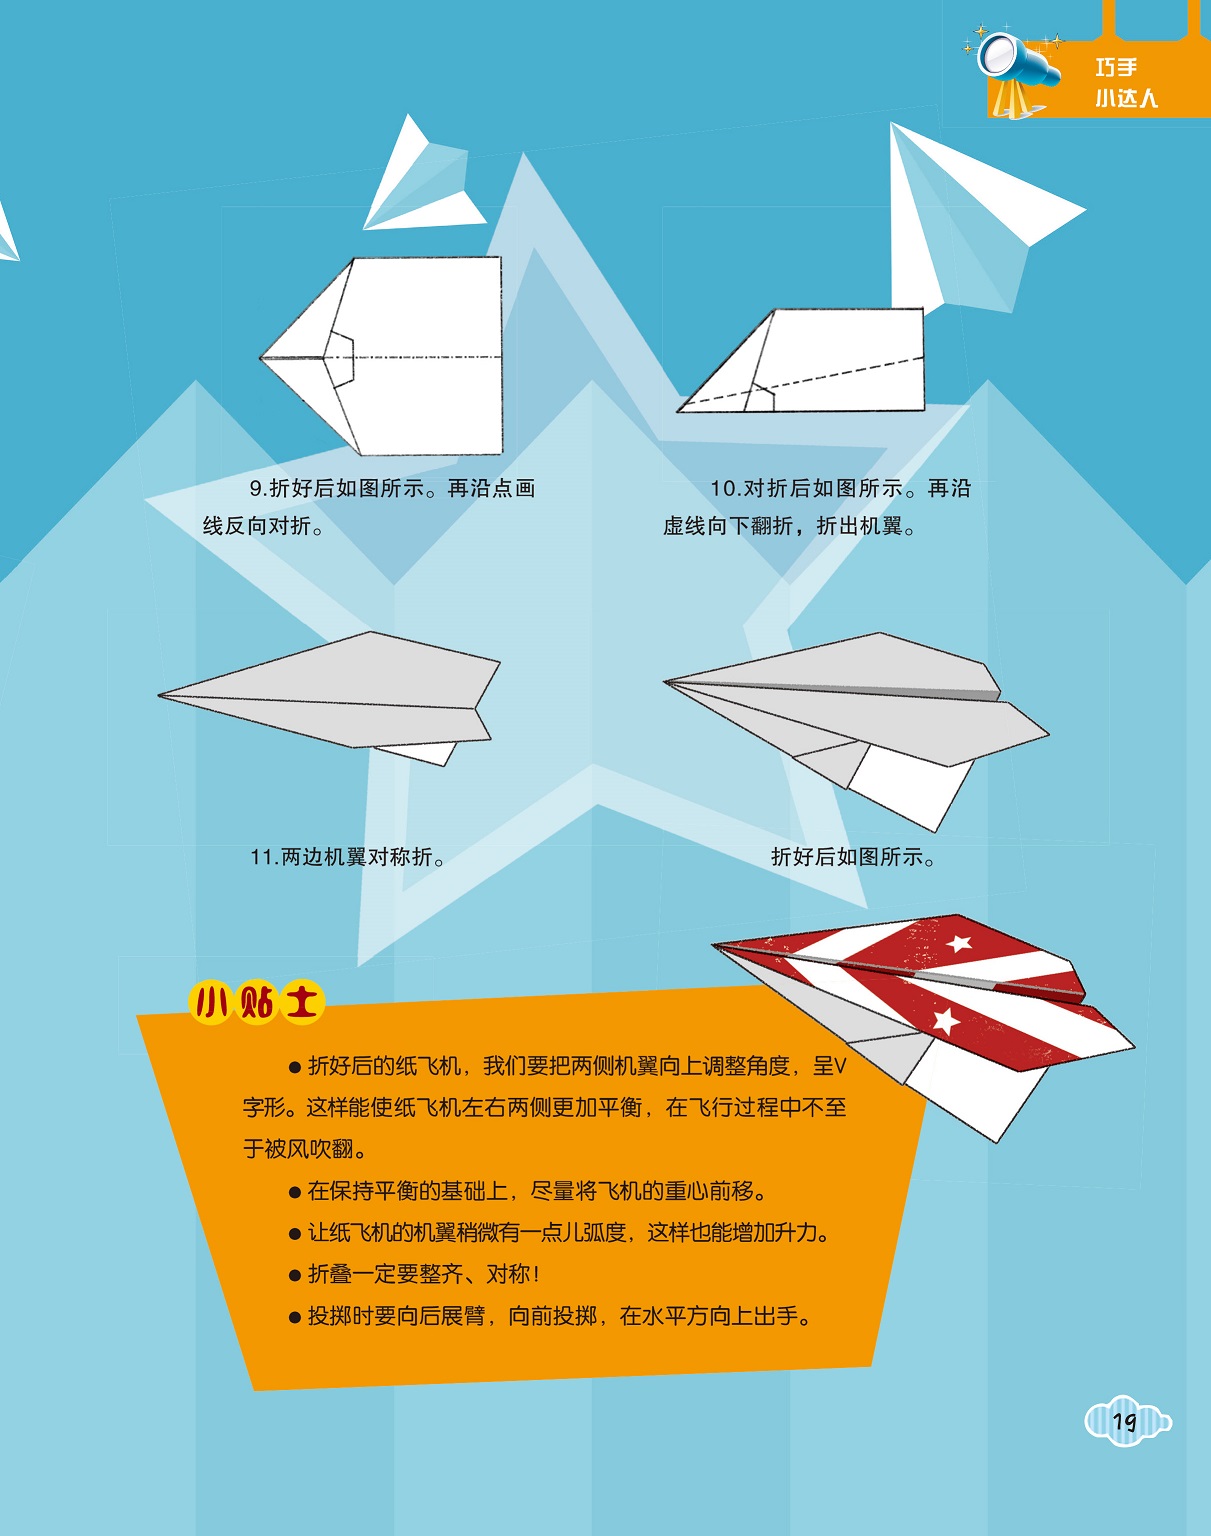 纸飞机语言包、纸飞机中文语言包